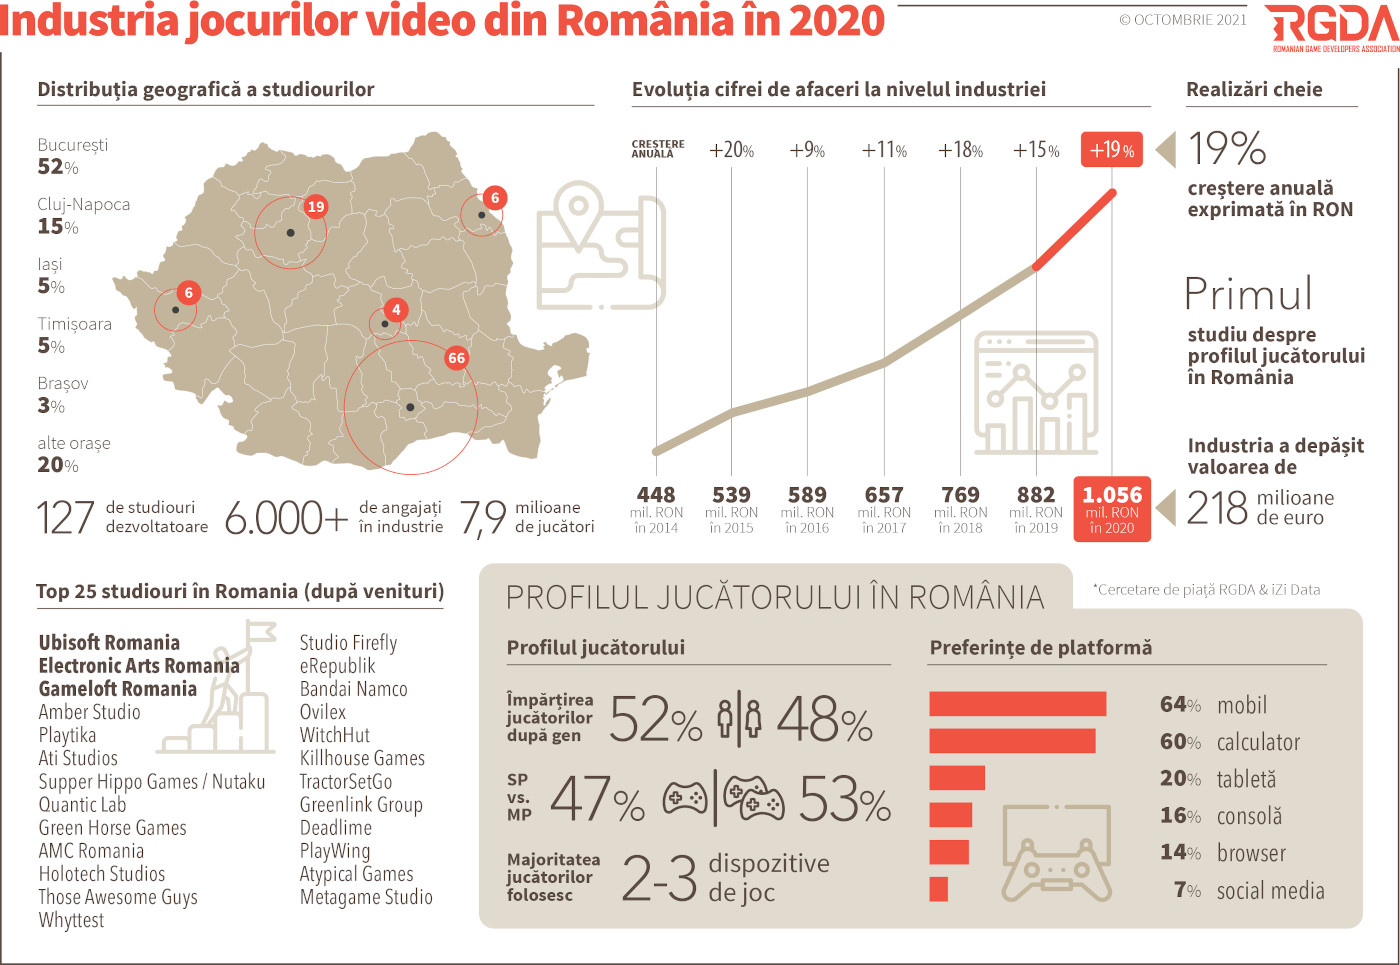 Infografic - Industria dezvoltatoare de jocuri video din Romania